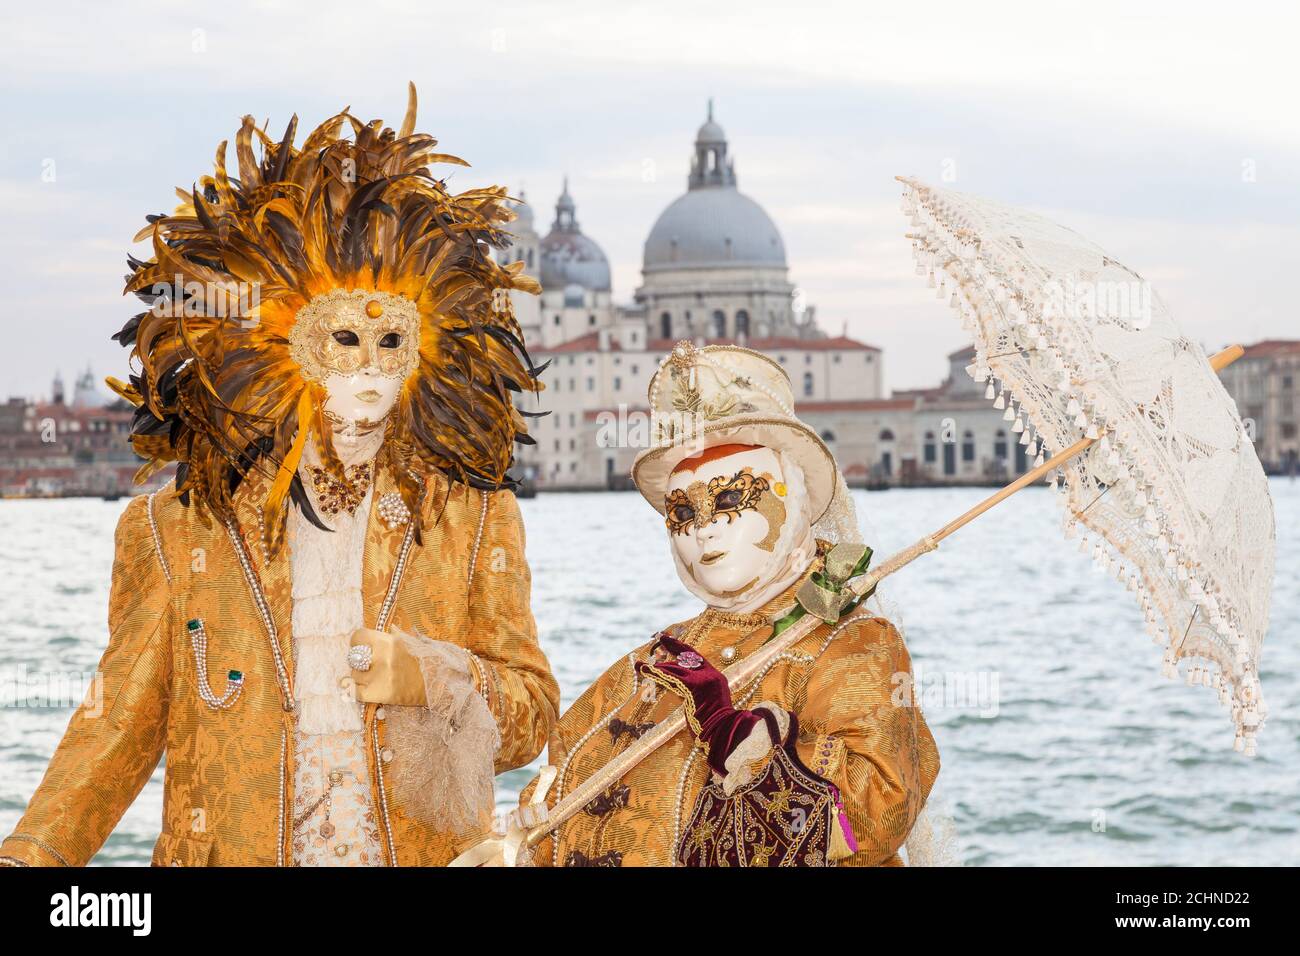 Venice, Veneto, italy  - Couple  in costume at the Venice Carnival  posing with backdrop of Basilica de Santa Maria della Salute and lagoon Stock Photo